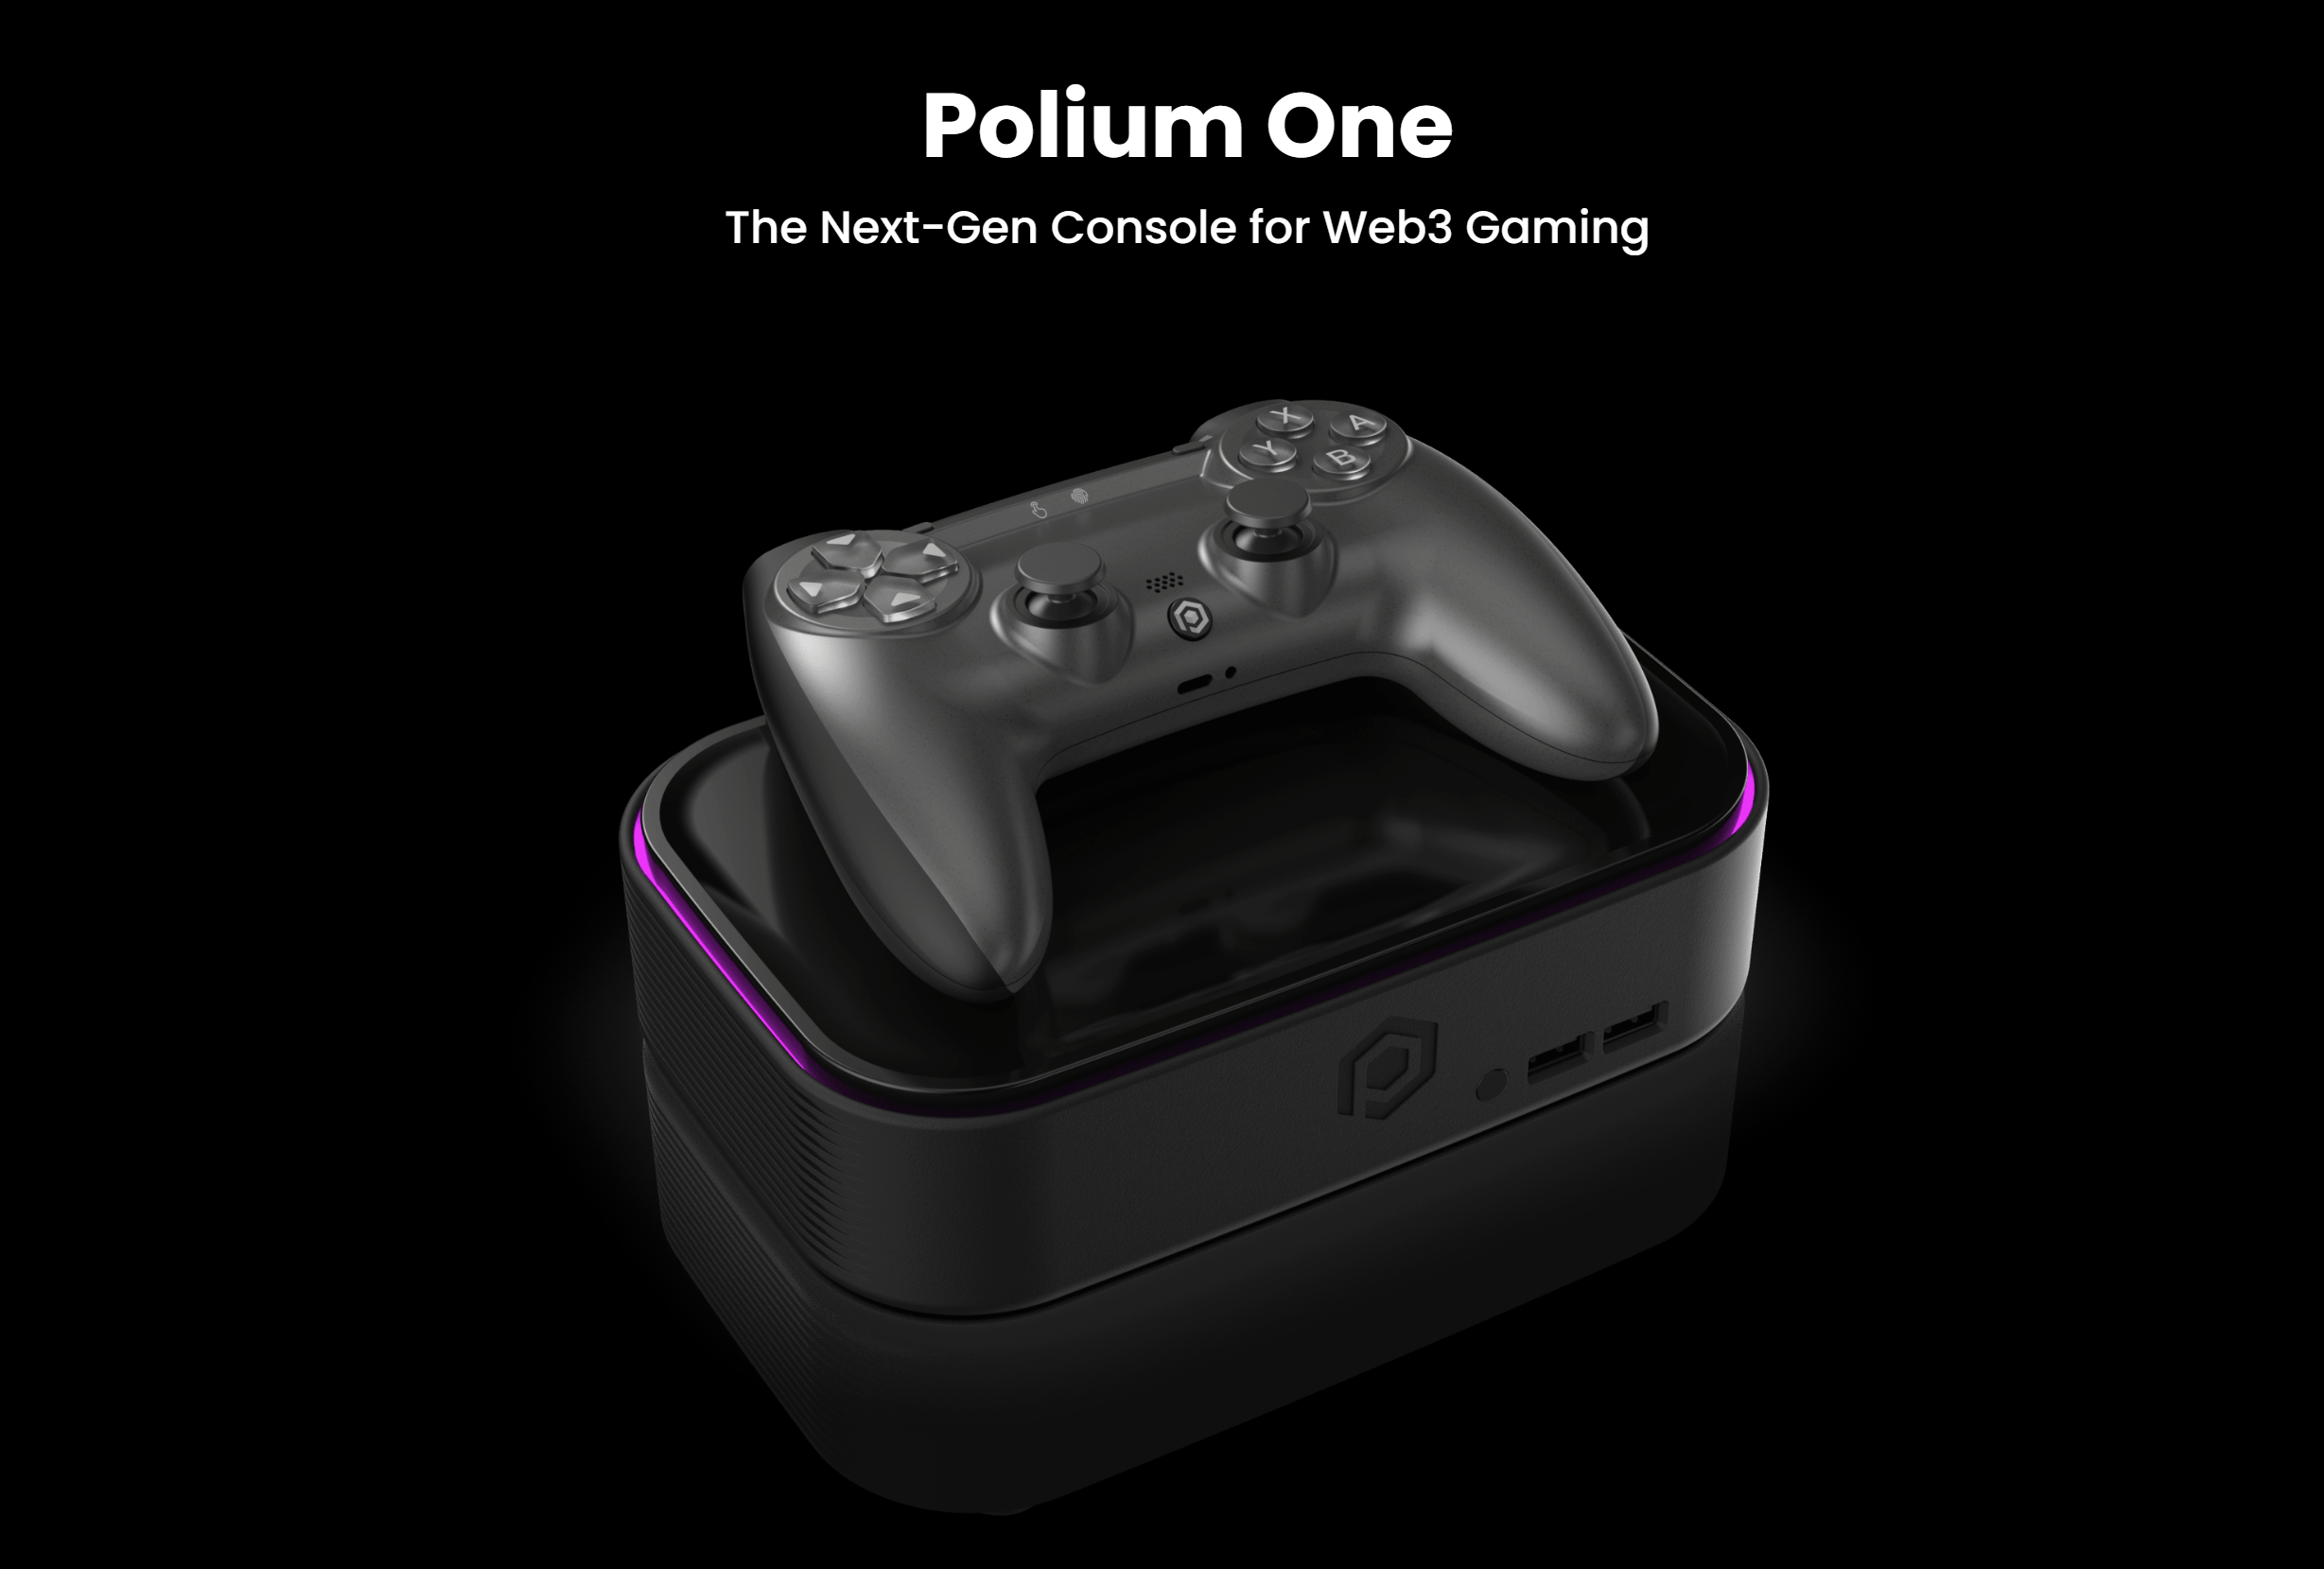 Polium One Ialah Konsol Untuk Permainan Web 3.0, Hadir Dengan Sokongan Rantaian Blok Dan Jual-Beli NFT